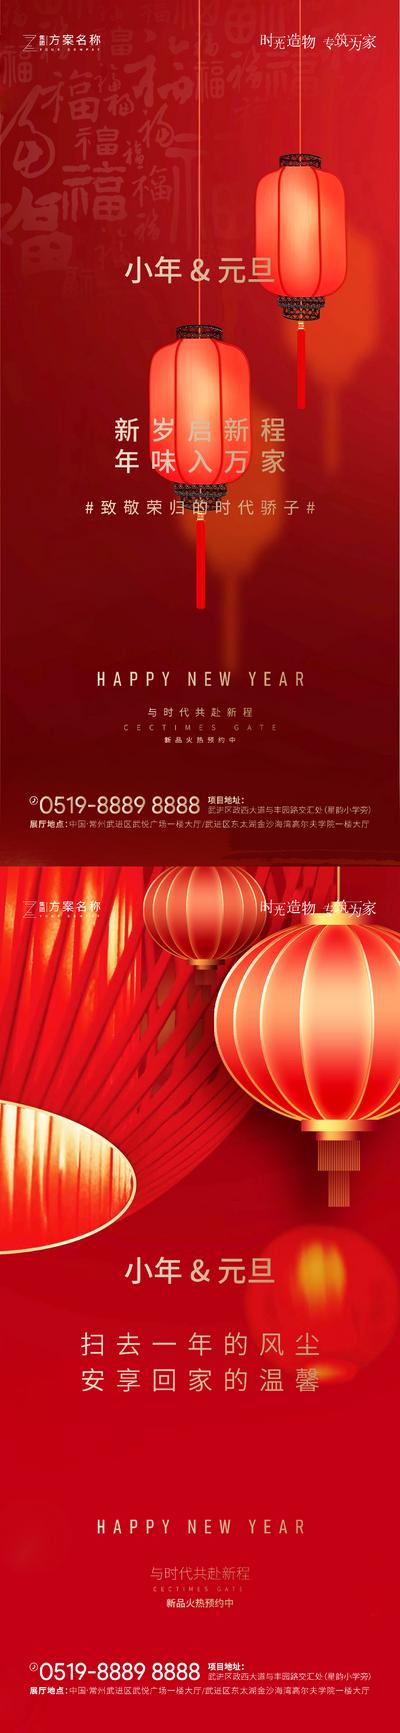 南门网 海报 公历节日 中国传统节日  元旦 小年 灯笼 红色  系列